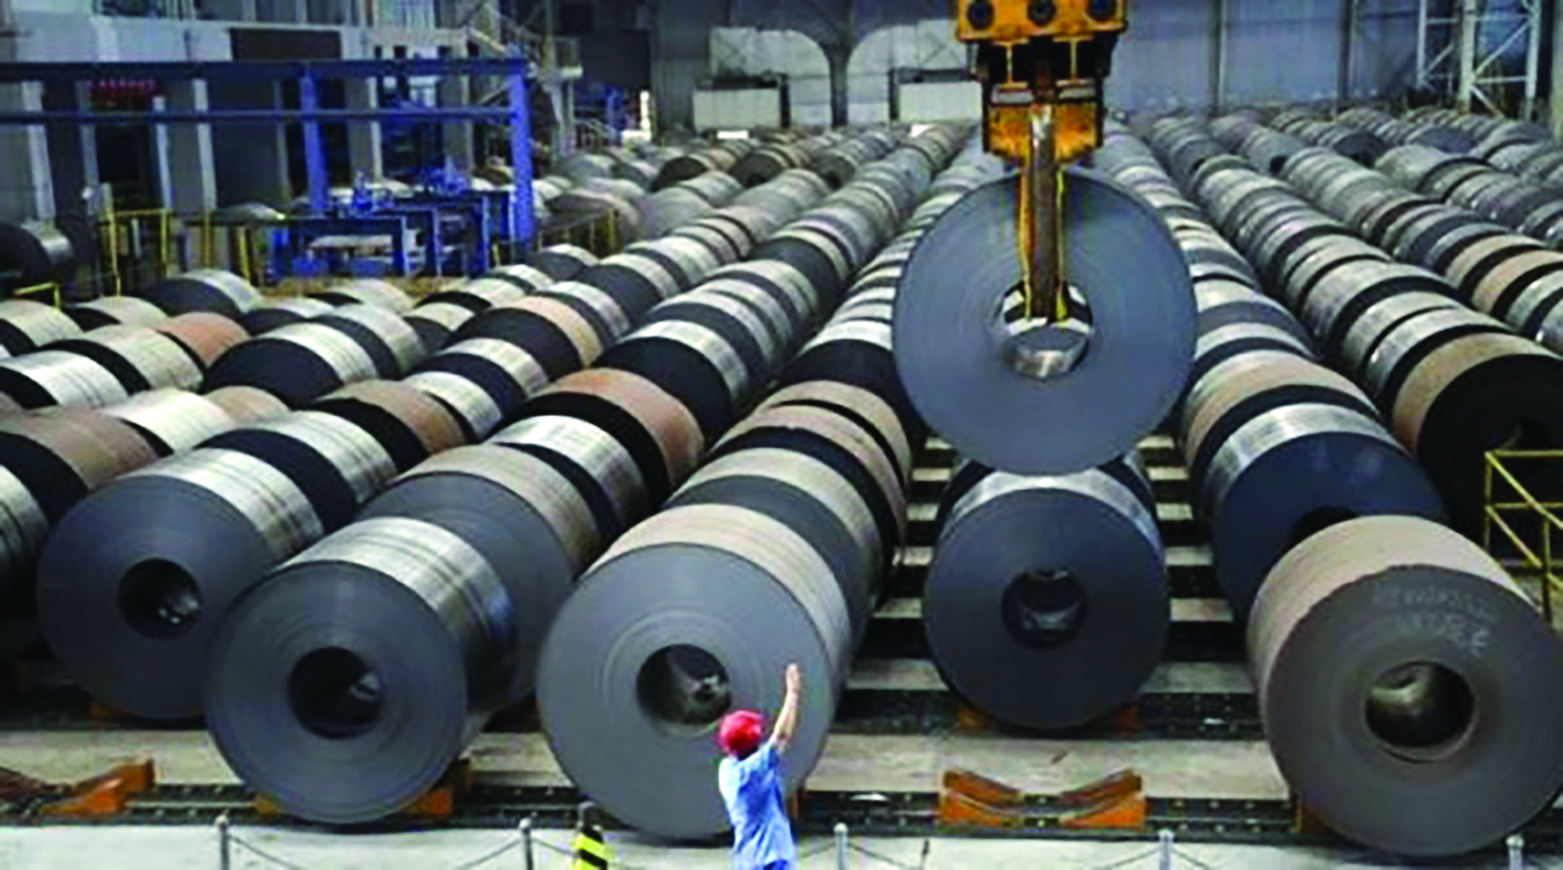  Mỹ và EU cân nhắc áp thuế môi trường lên sắt và nhôm nhập từ Trung Quốc.p/Ảnh: IndianExpress